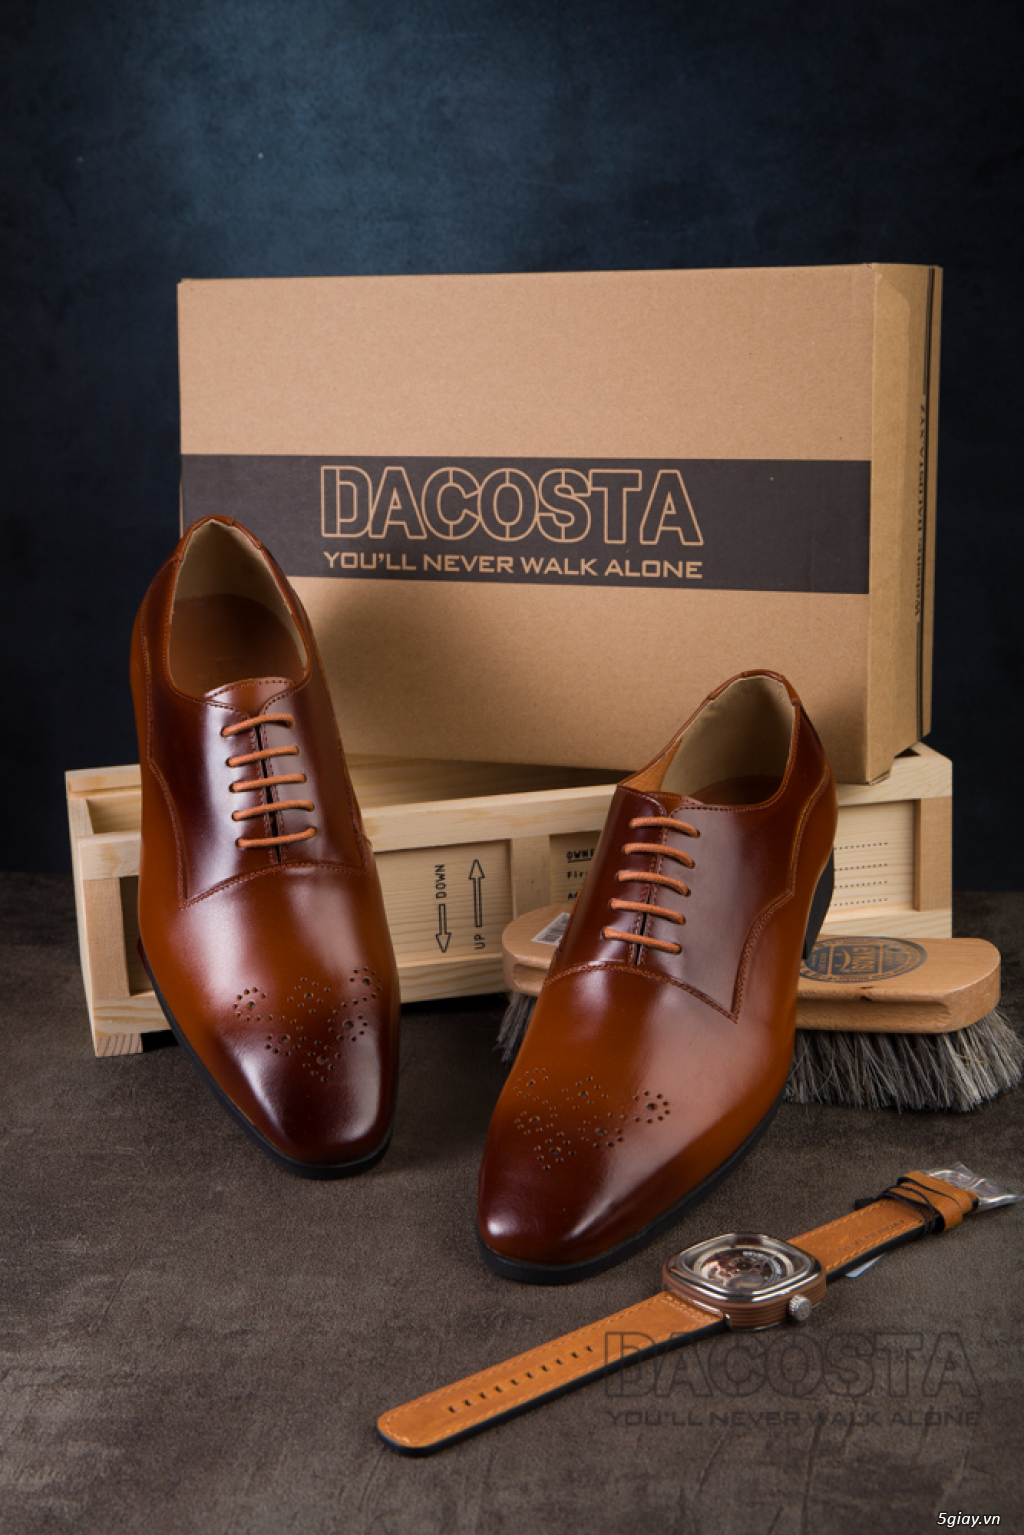 Tiệm Giày Dacosta - Những Mẫu Giày Tây Oxford Hot Nhất 2019 - 40